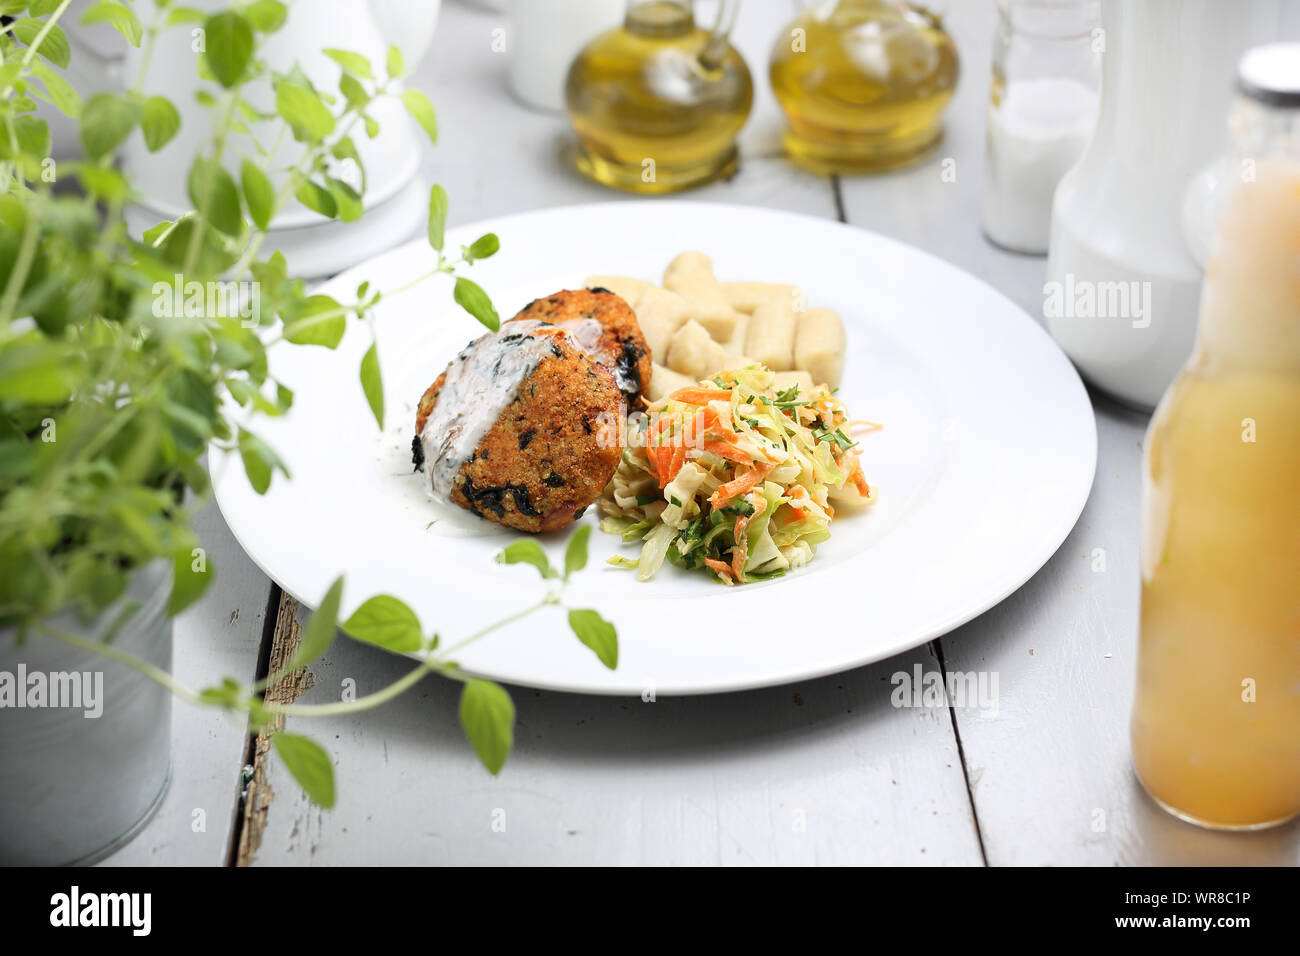 Vegetarian cooking. Meatless vegetable cutlet, healthy diet. Stock Photo